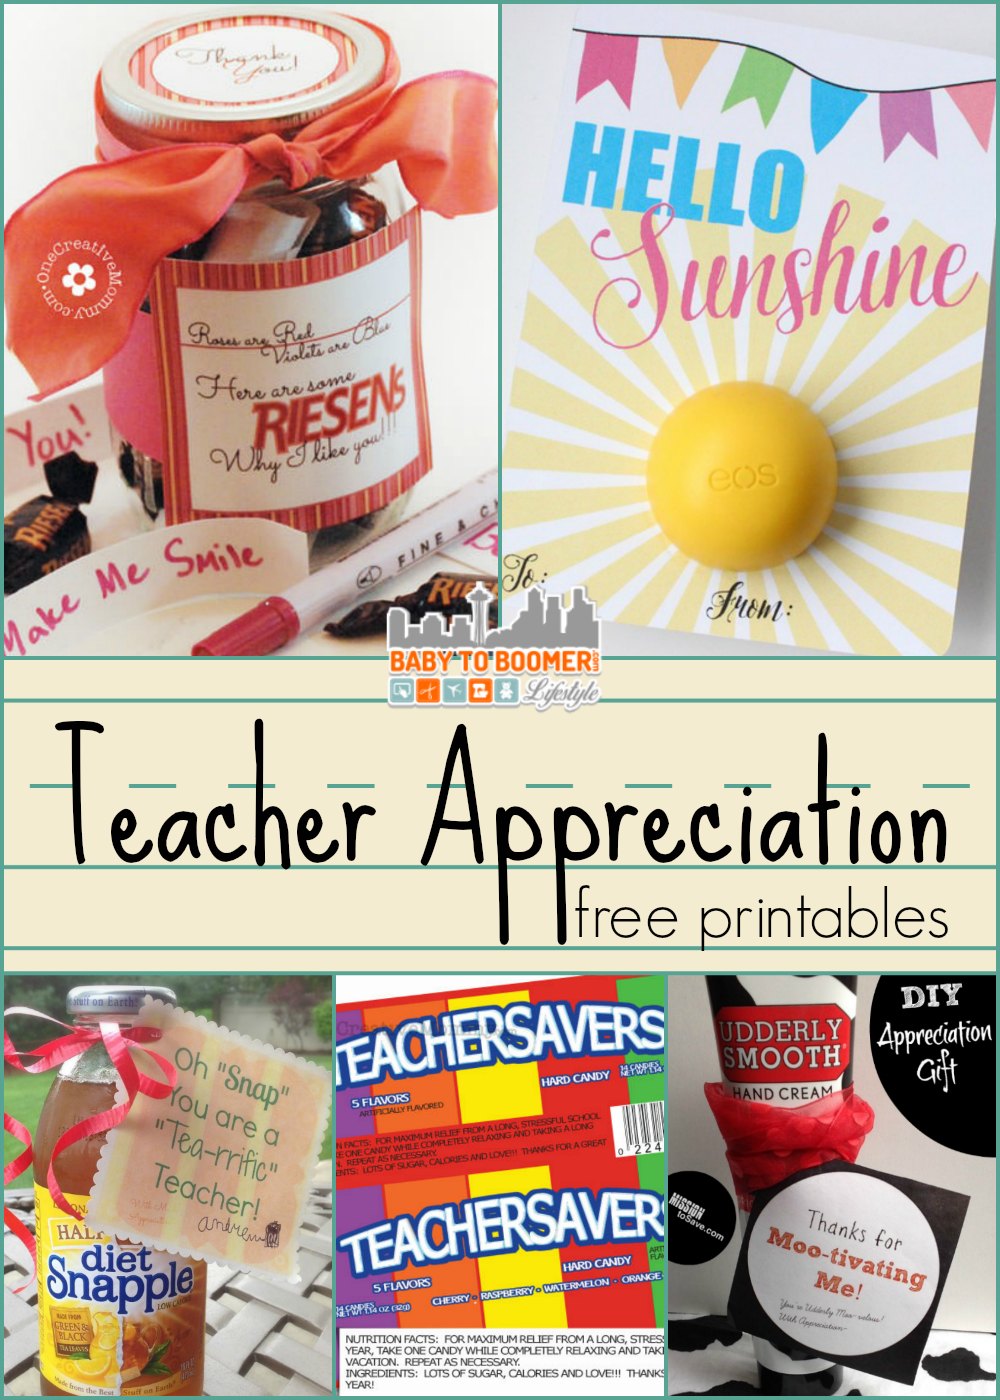 Chick-fil-a Inspired Teacher Appreciation Week Gift, Teacher Thank